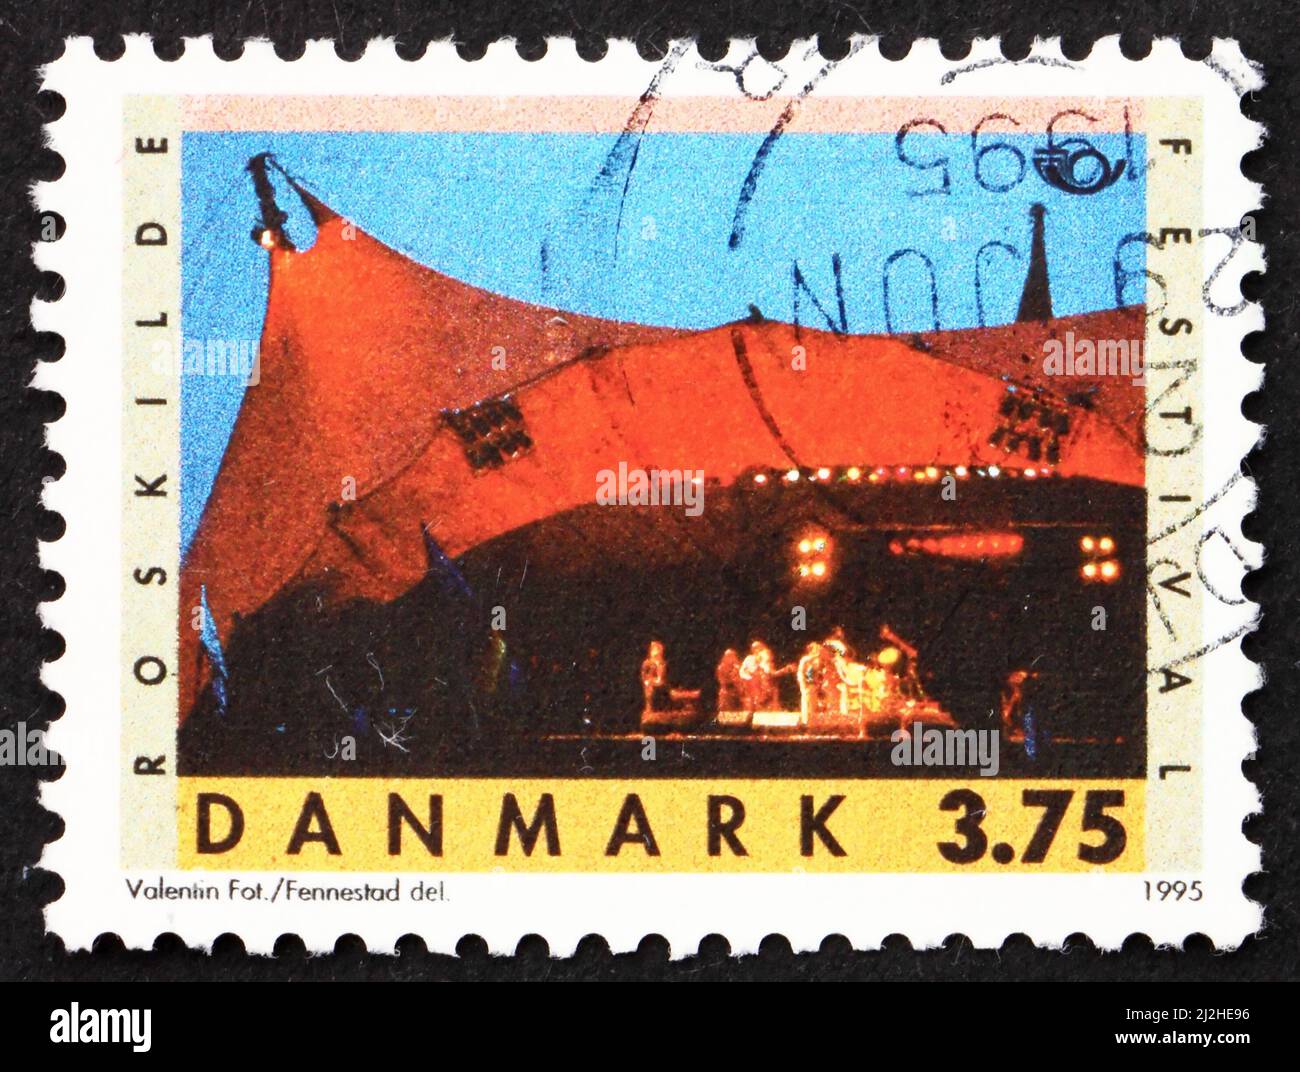 DANEMARK - VERS 1995 : un timbre imprimé au Danemark montre le festival de Roskilde, festival annuel de musique, vers 1995 Banque D'Images